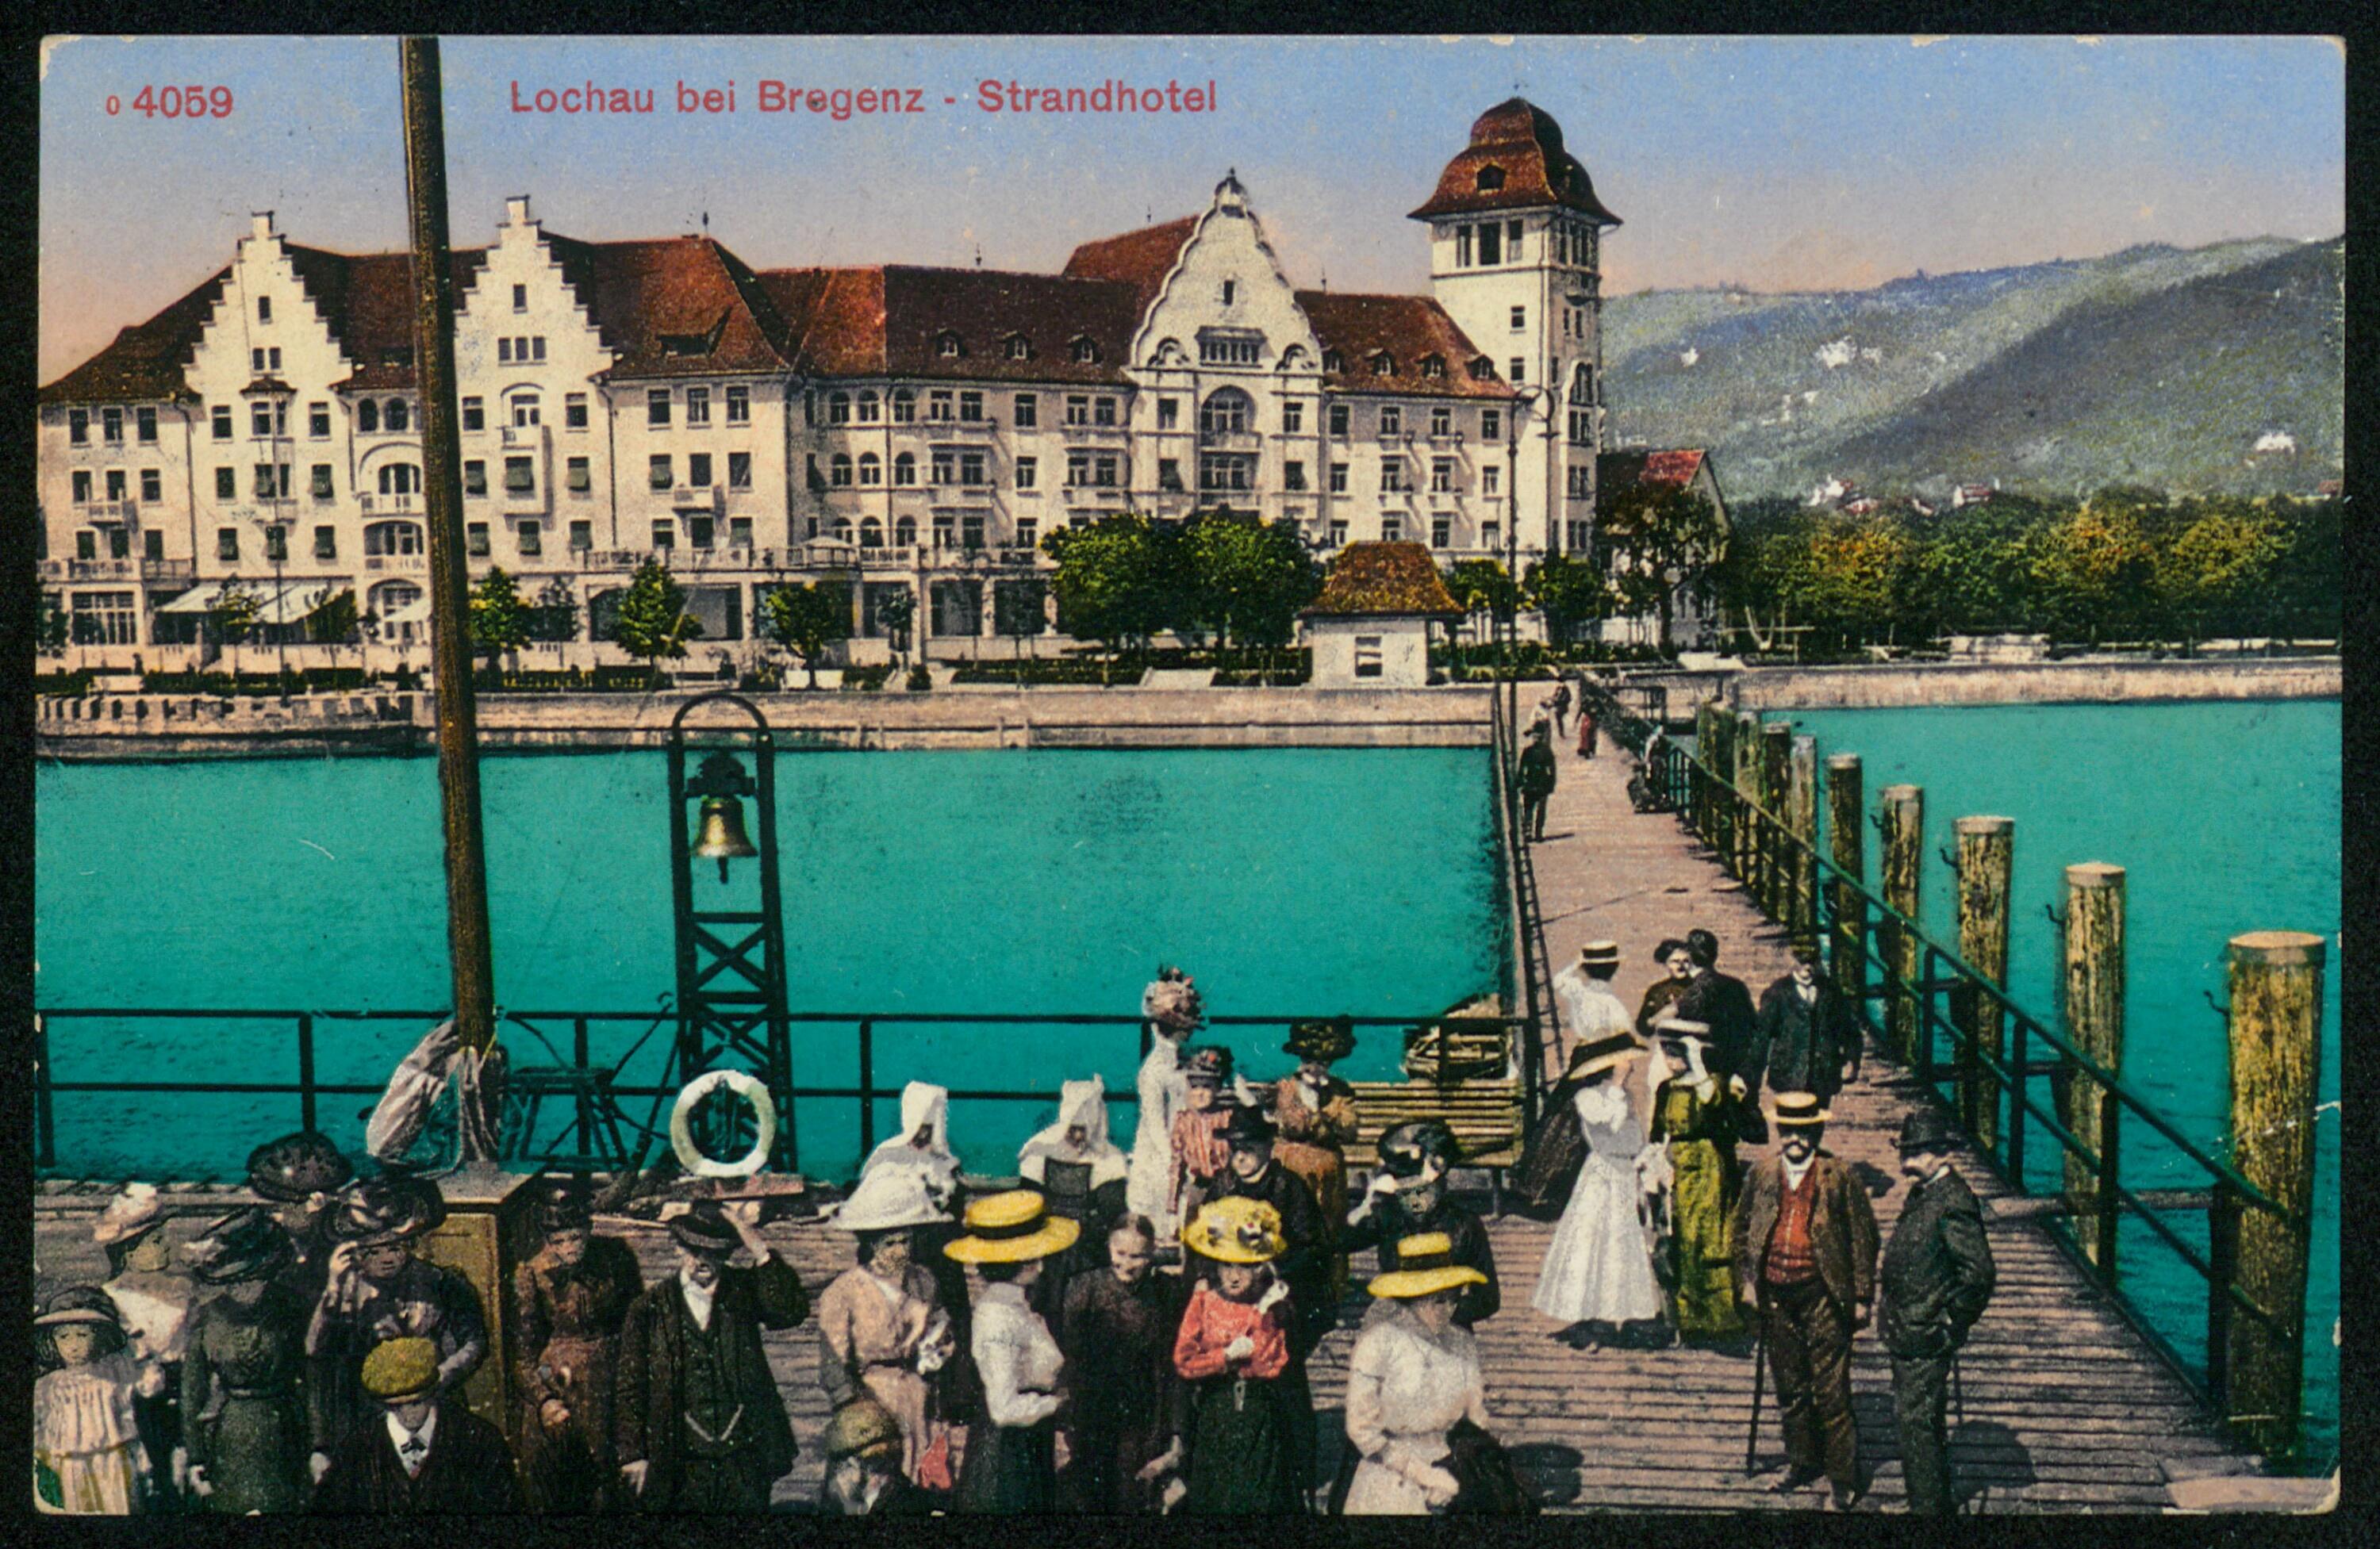 Lochau bei Bregenz - Strandhotel></div>


    <hr>
    <div class=